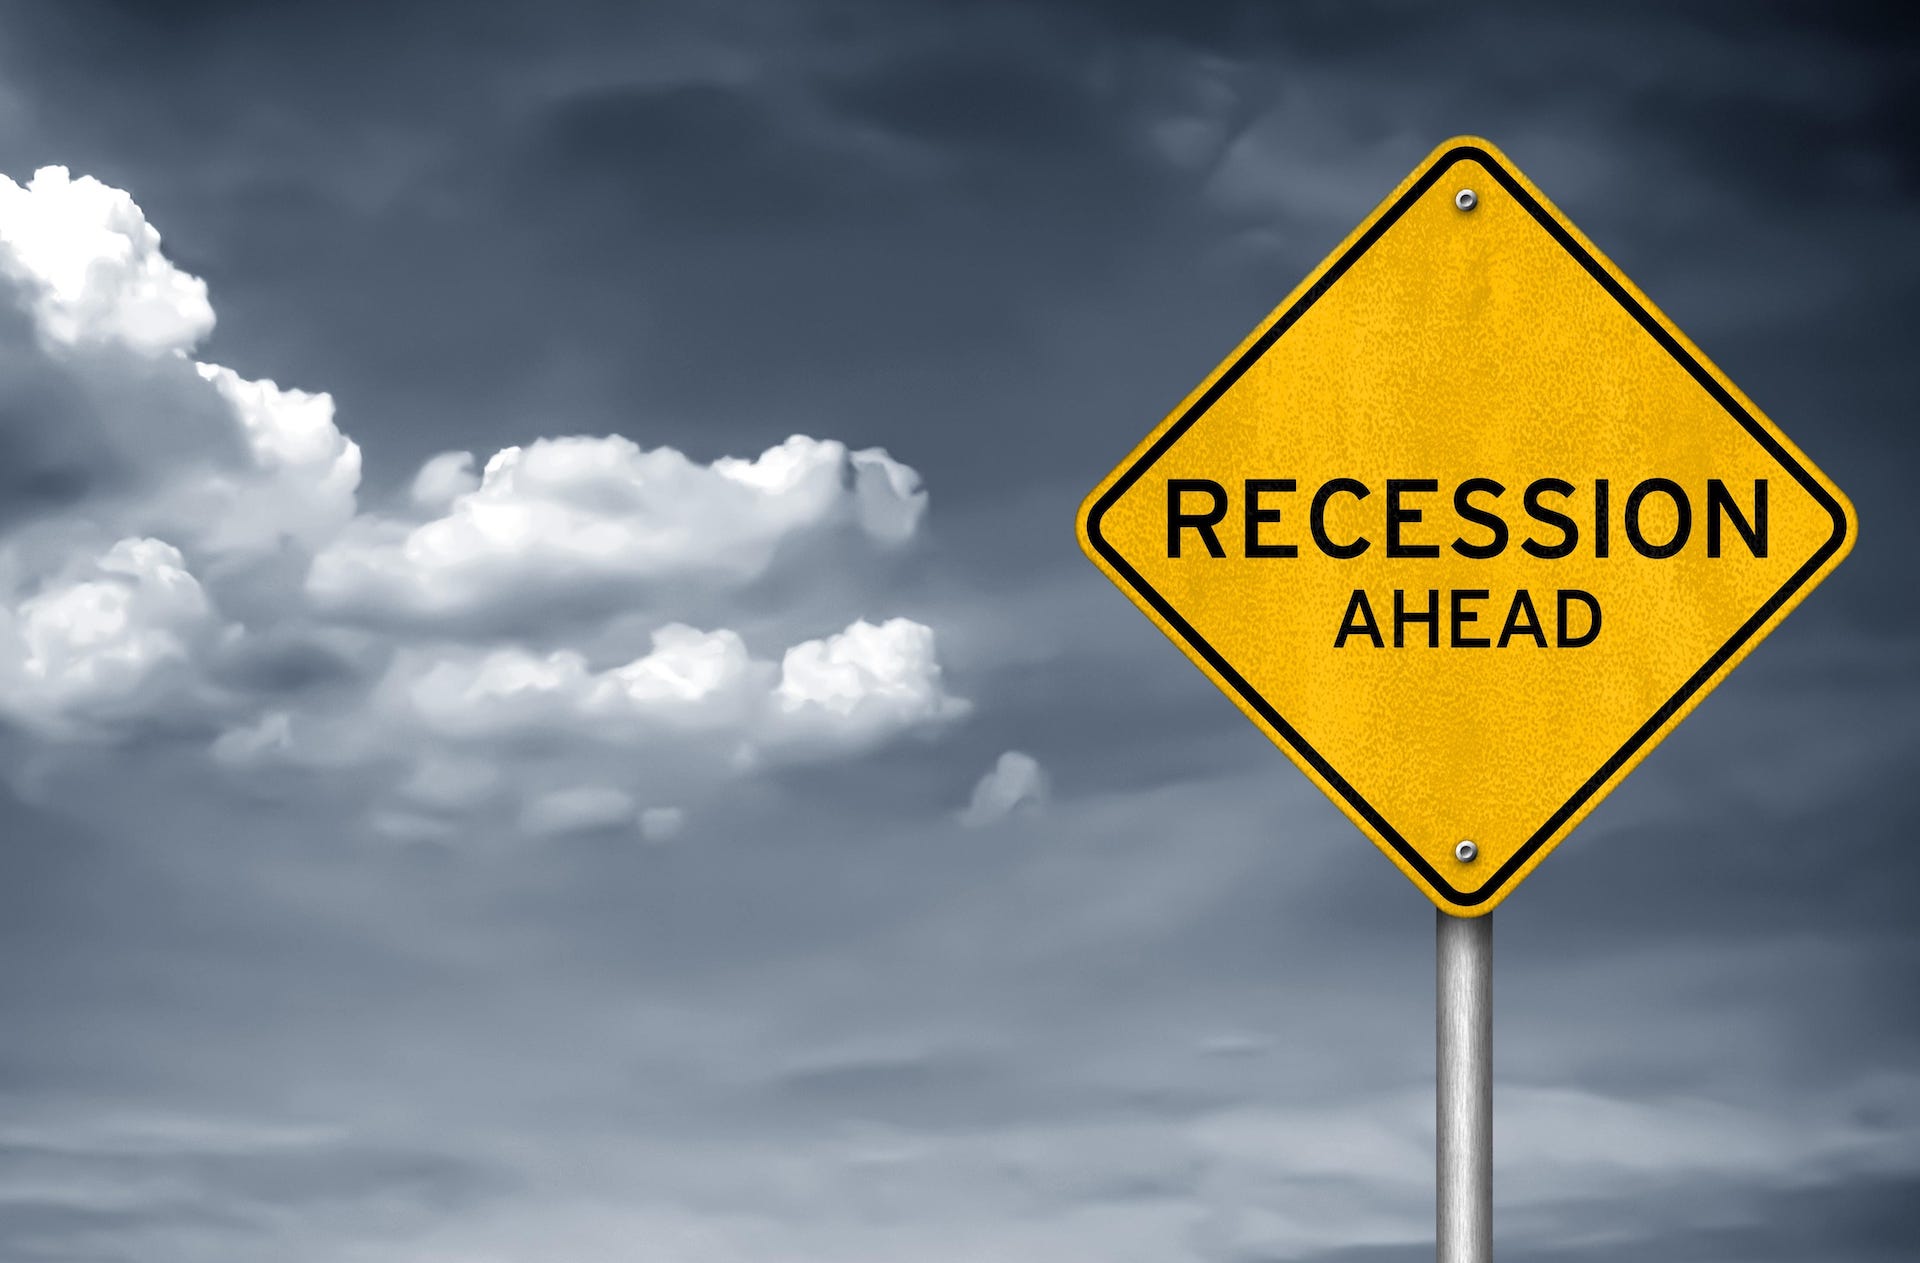 5. Recessions